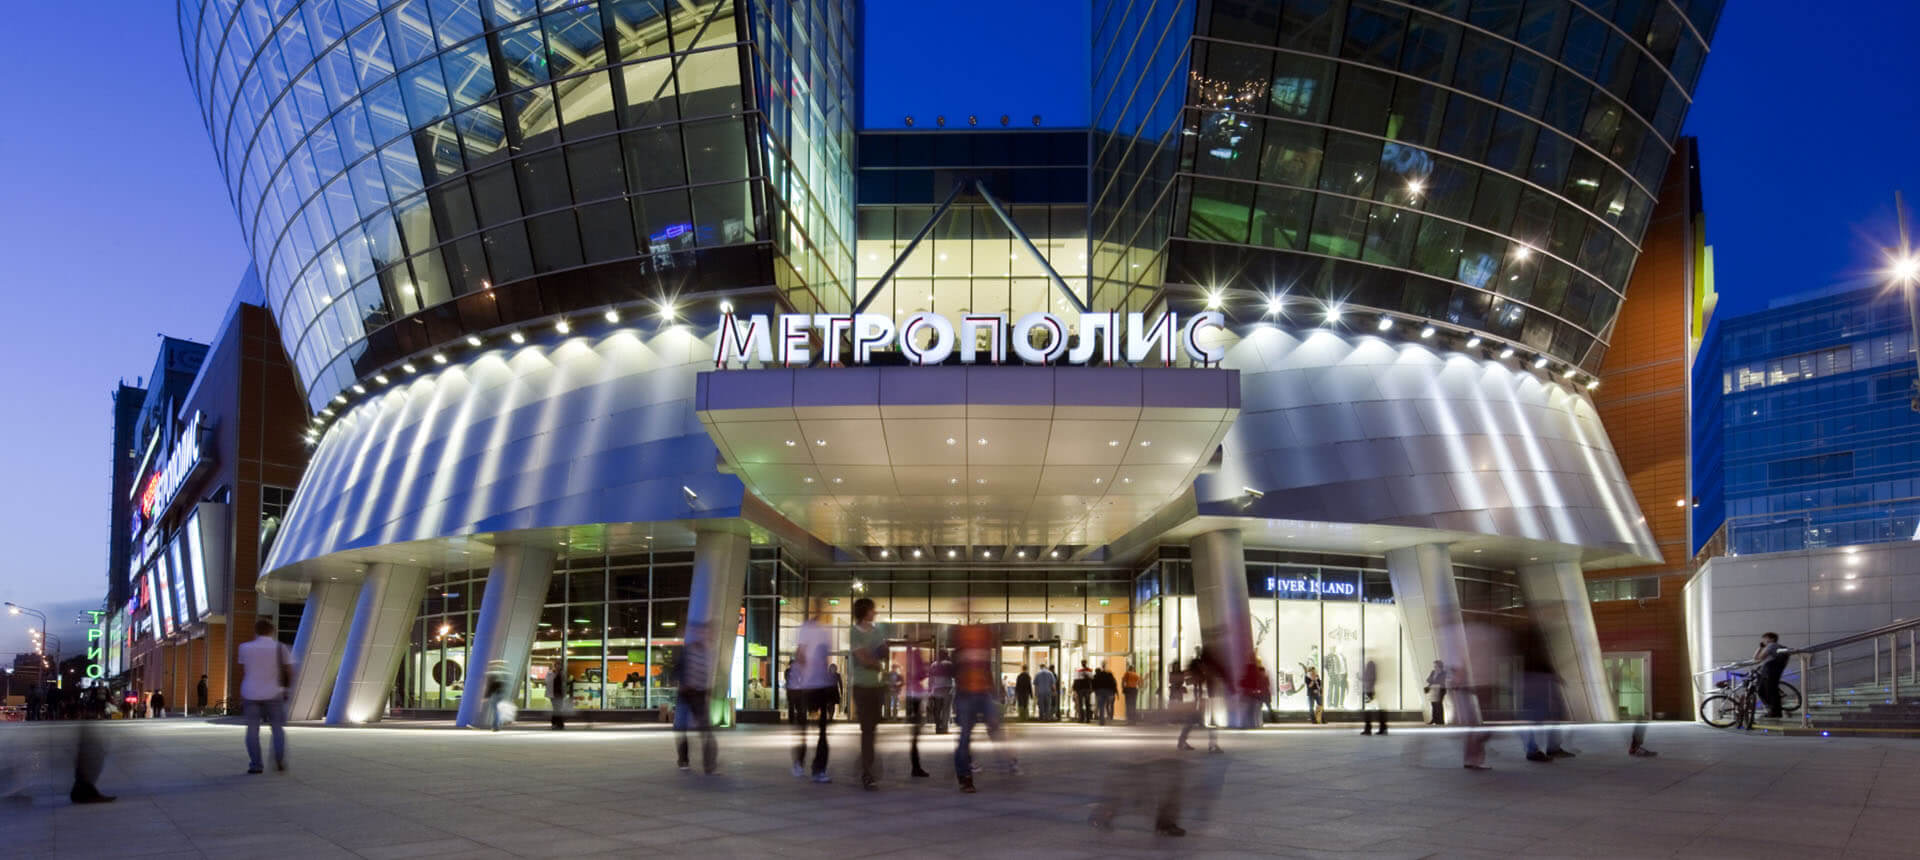 метрополис магазины москва